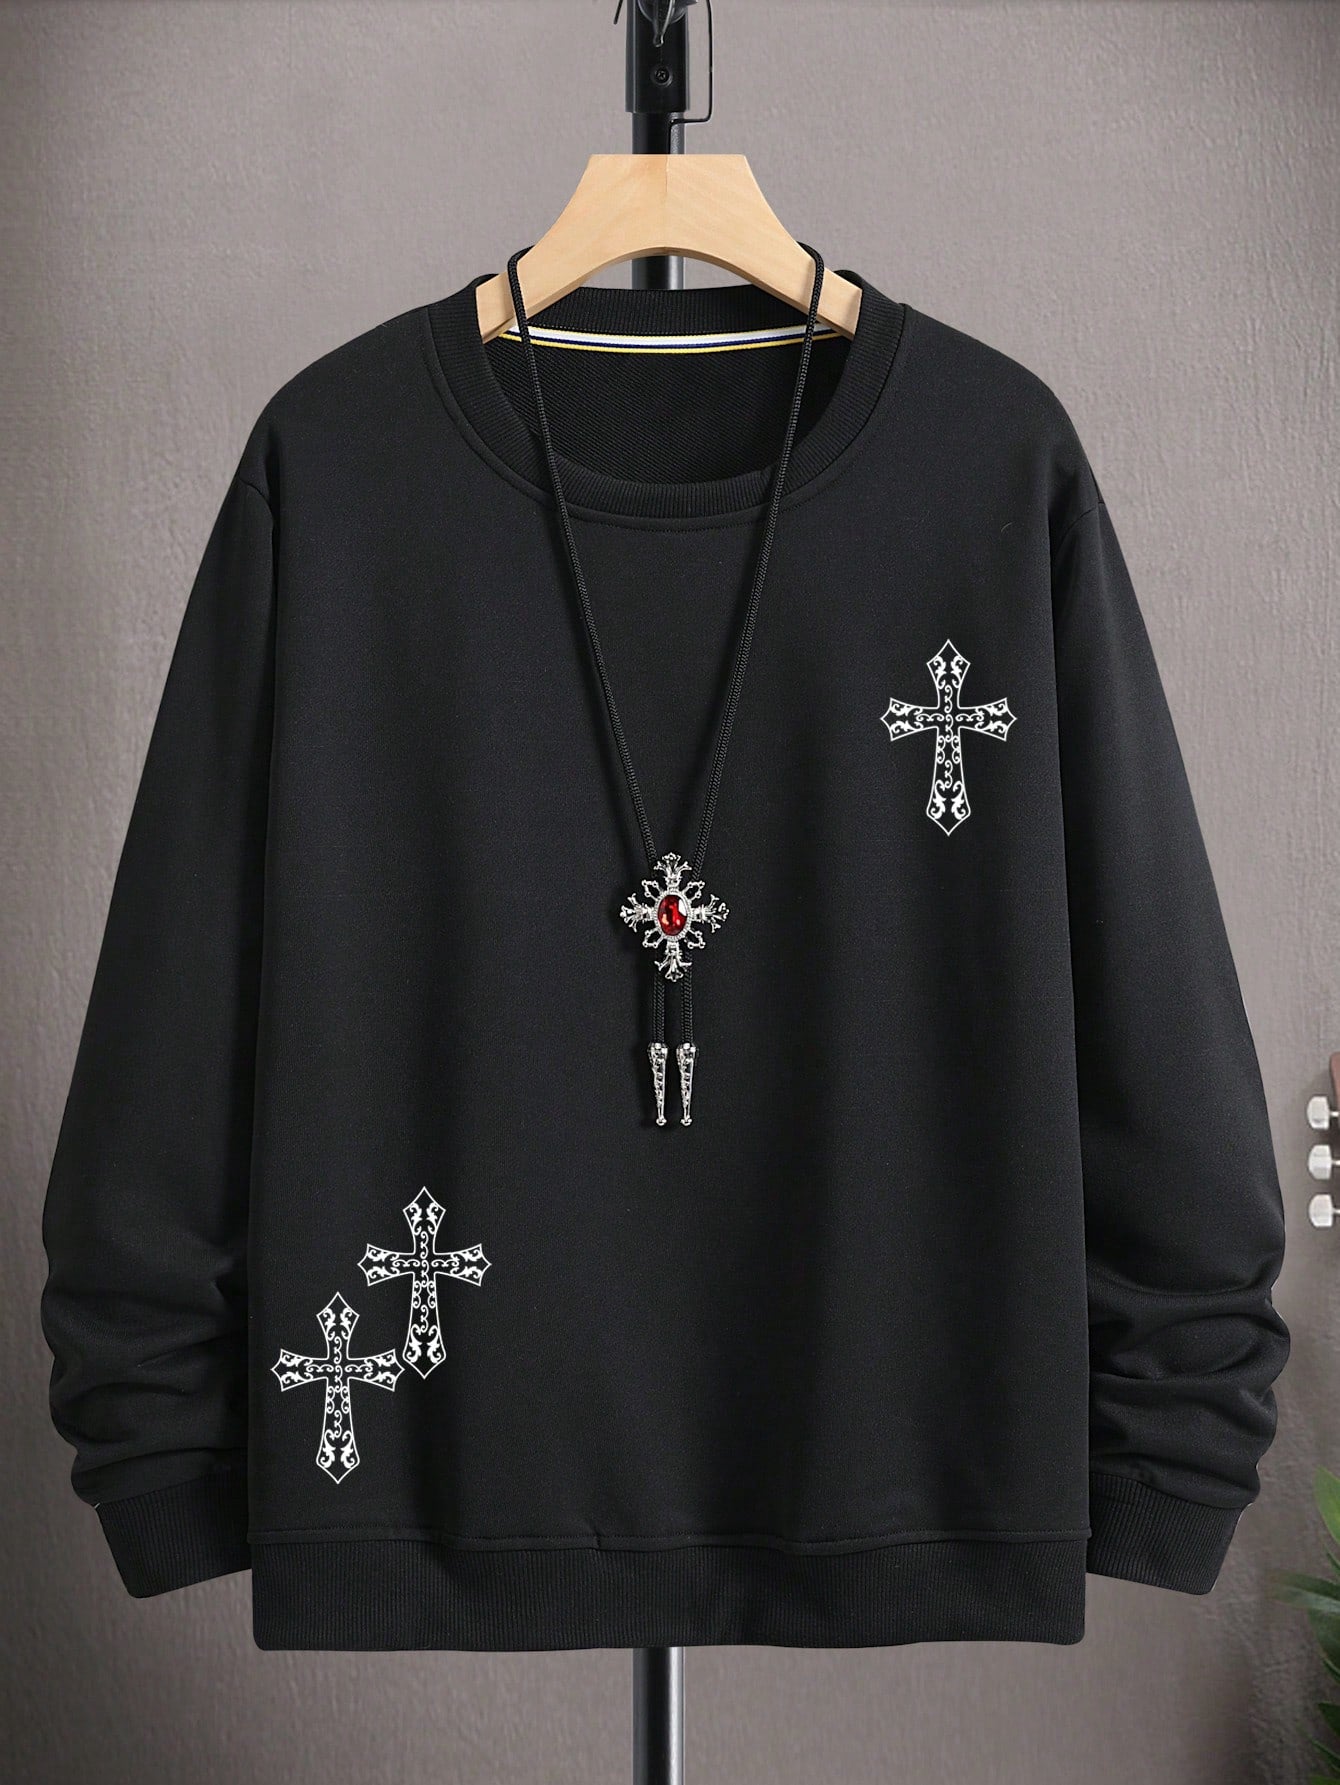 Men's Cross Printed Long Sleeve Sweatshirt